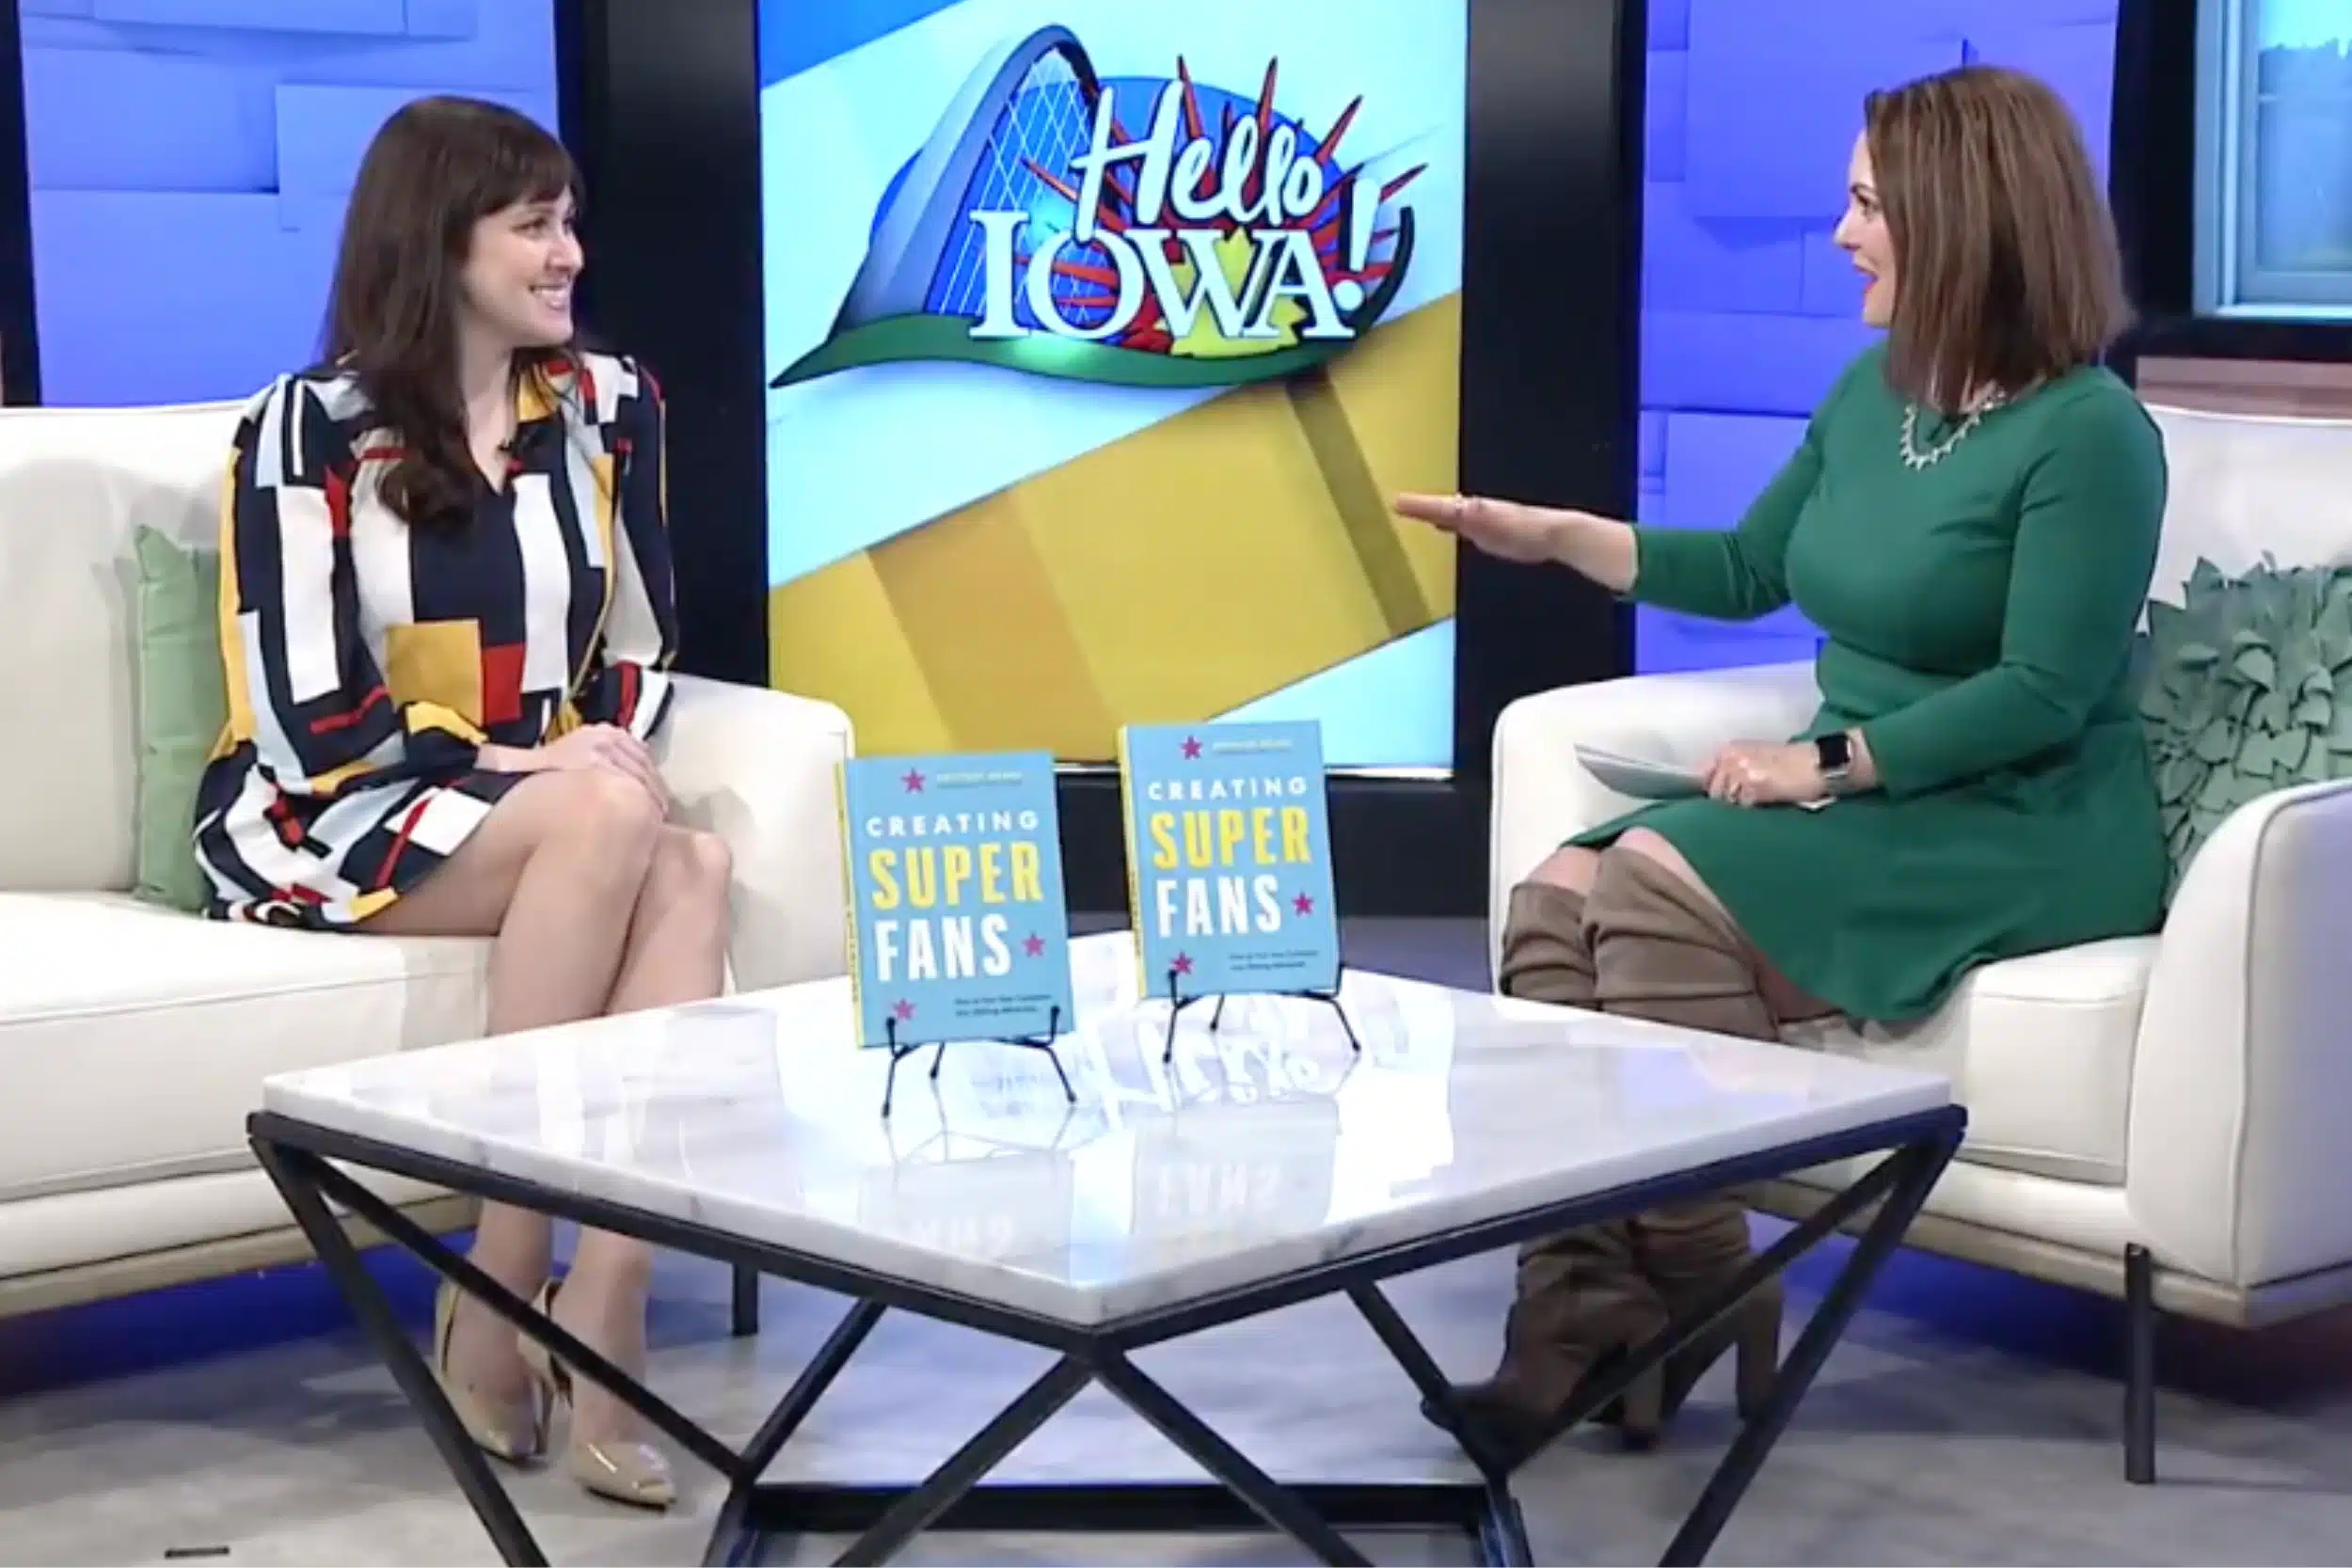 WHO 13 Des Moines Brittany Hodak Interview on Hello Iowa